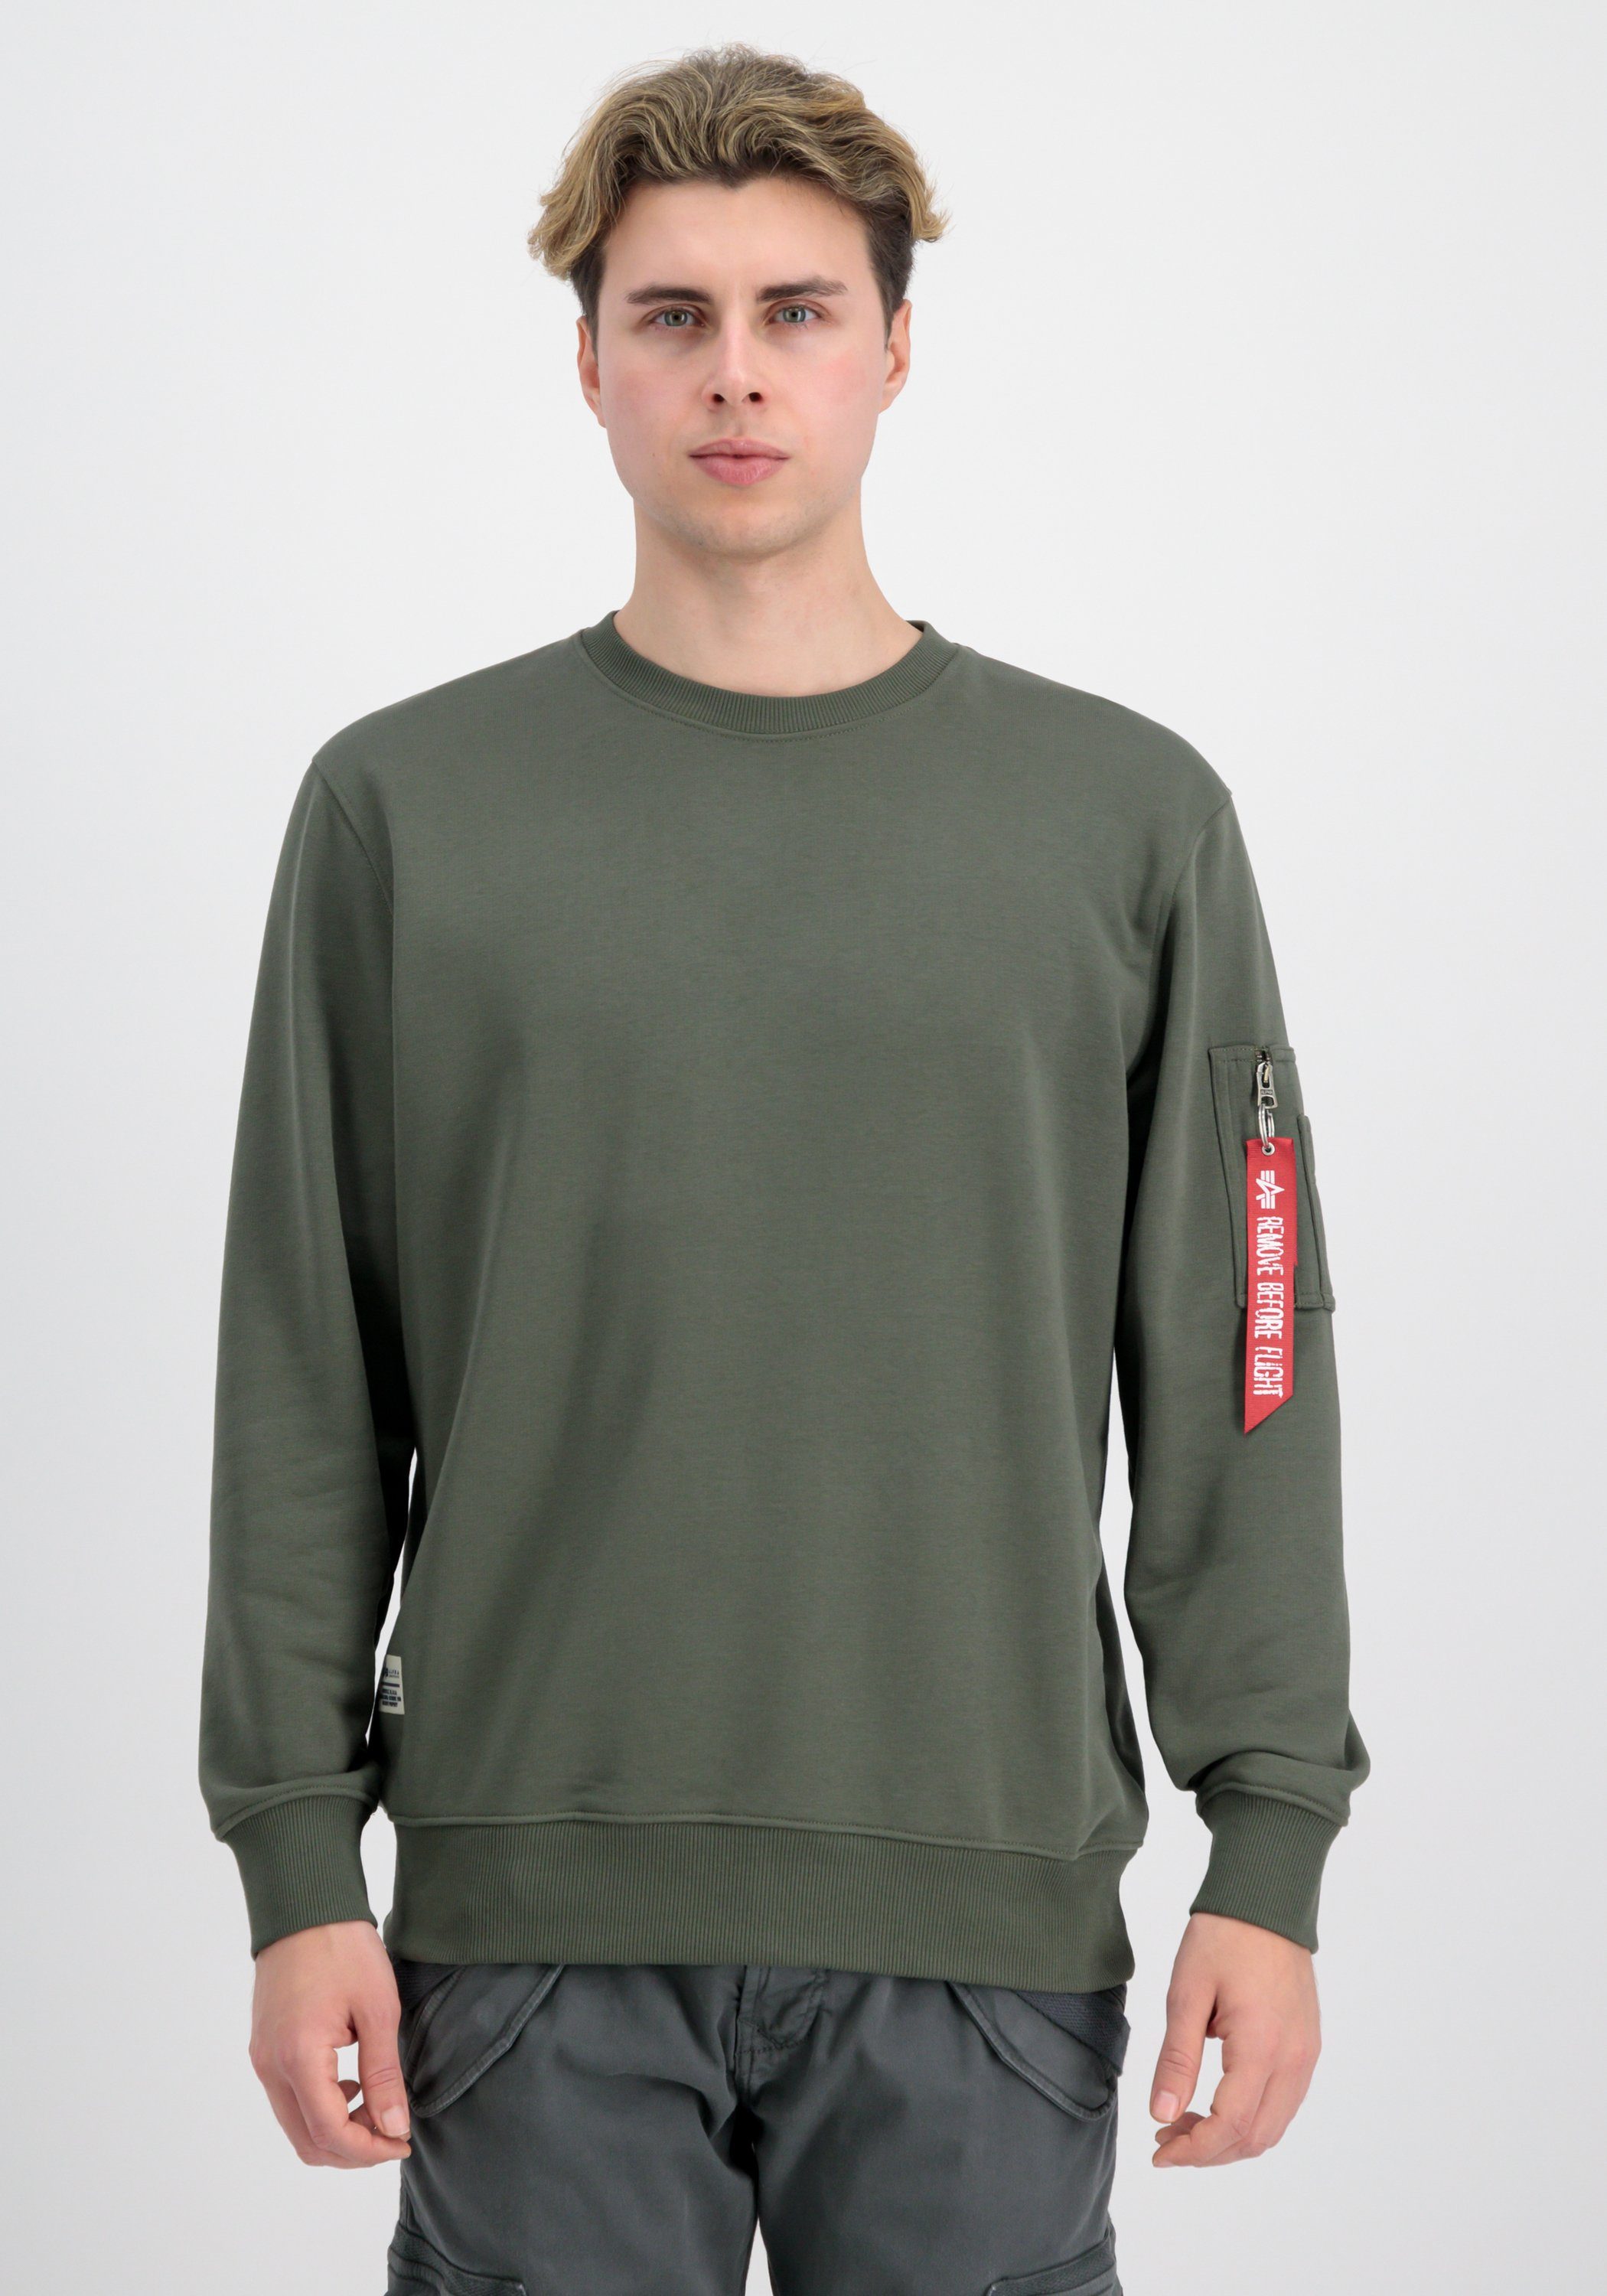 Sweater Industries olive Blood Men Sweatshirts Alpha USN - Chit dark Alpha Industries Sweater